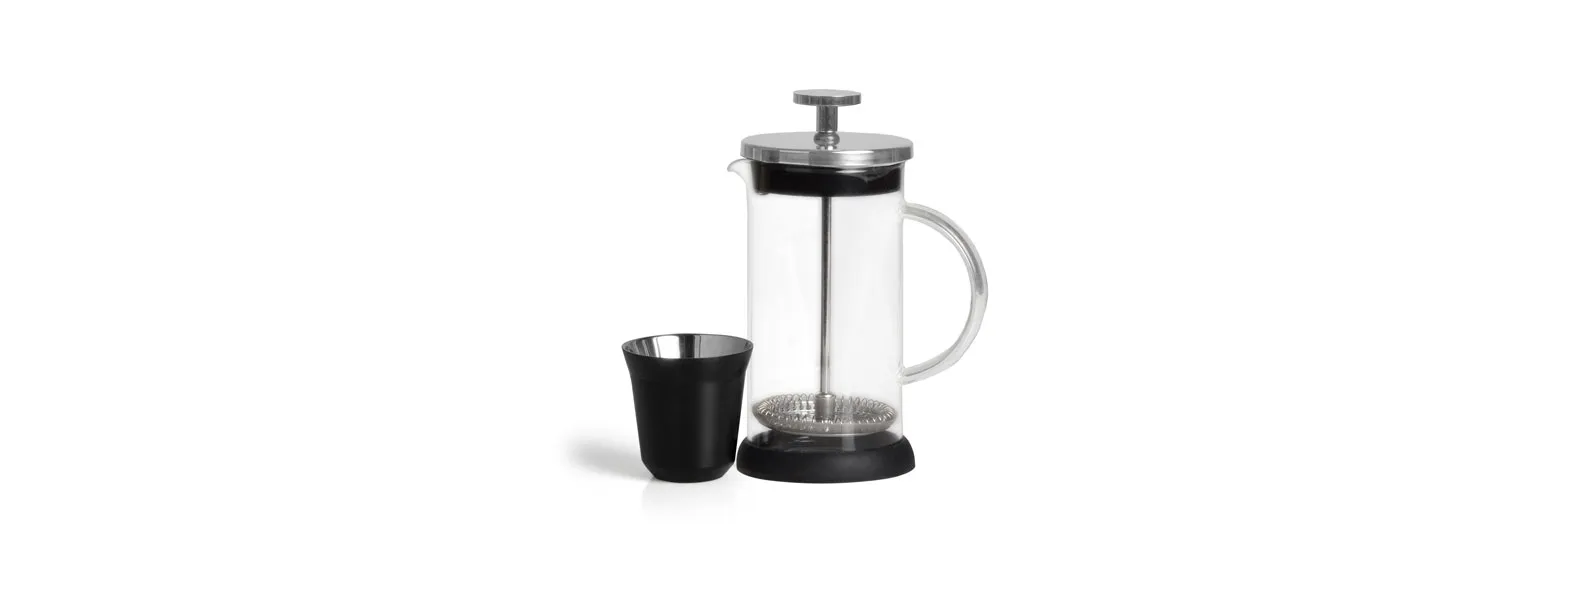 Kit para café. Conta com cafeteira prensa francesa e dois copos de 60 ml para café em aço inox preto.